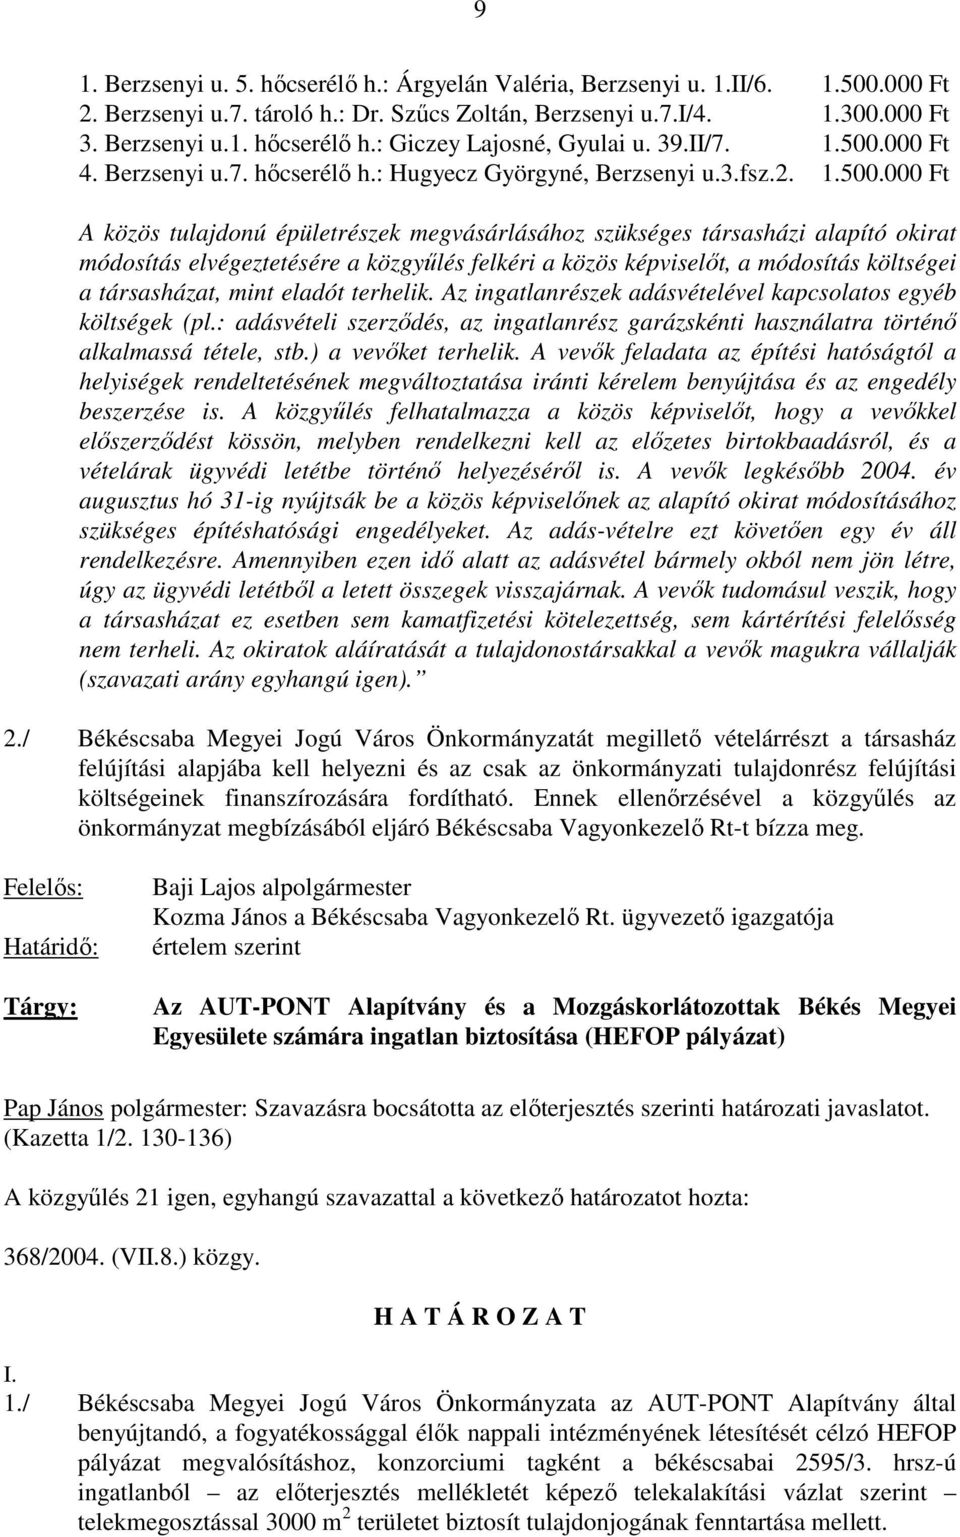 000 Ft 4. Berzsenyi u.7. hıcserélı h.: Hugyecz Györgyné, Berzsenyi u.3.fsz.2. 1.500.